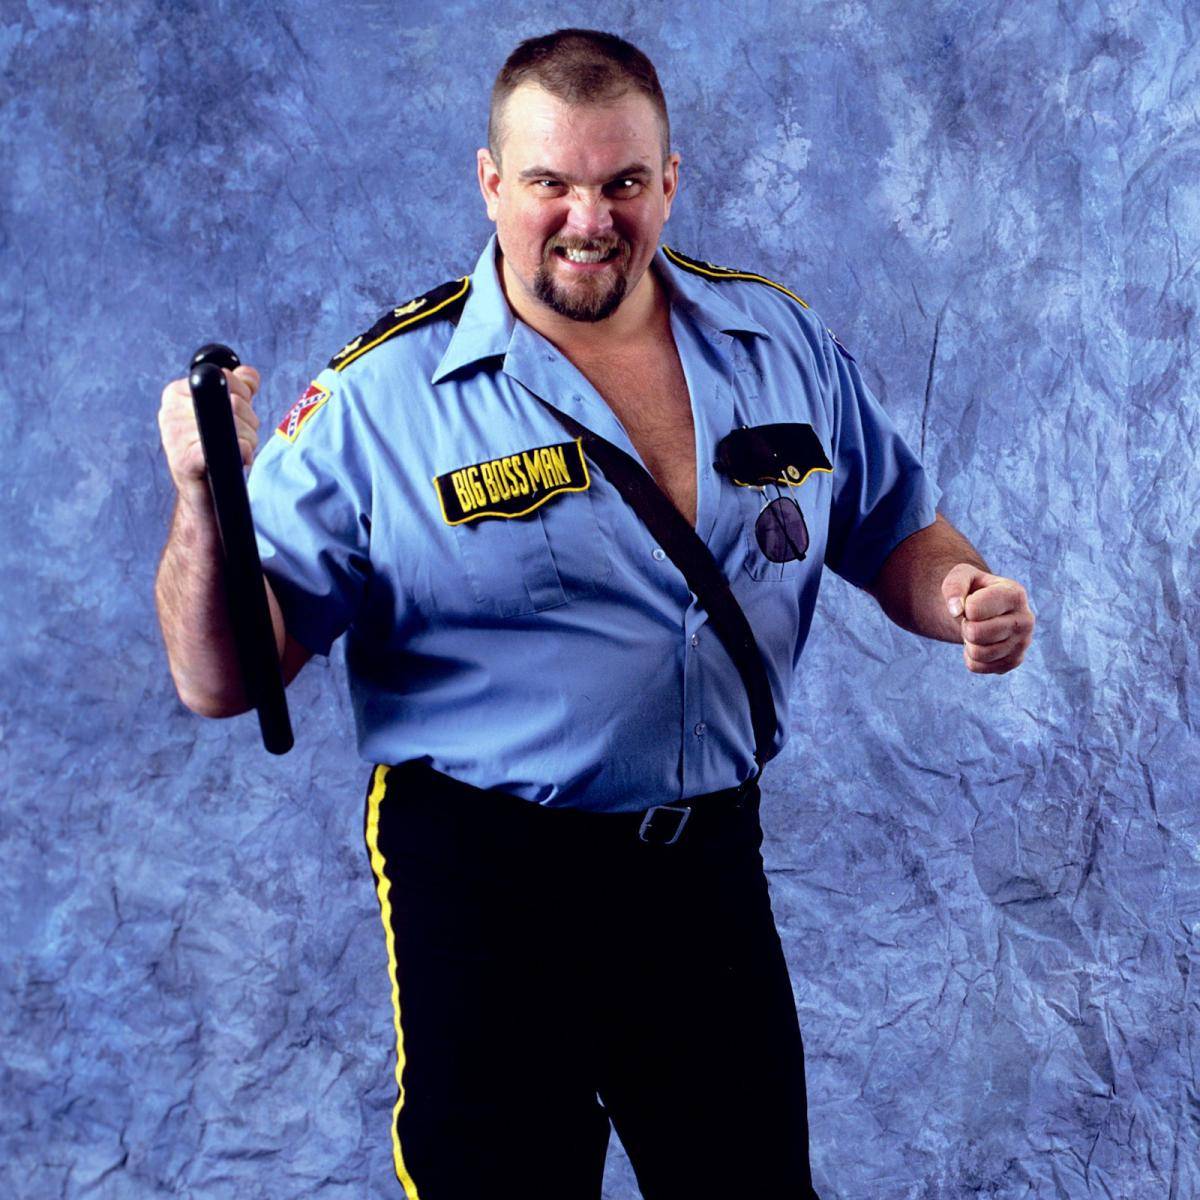 Der Big Boss Man prägte die alten WWE-Zeiten - und auch die späteren Stars auf nicht jedem bekannte Weise. Heute vor 18 Jahren starb er viel zu früh.